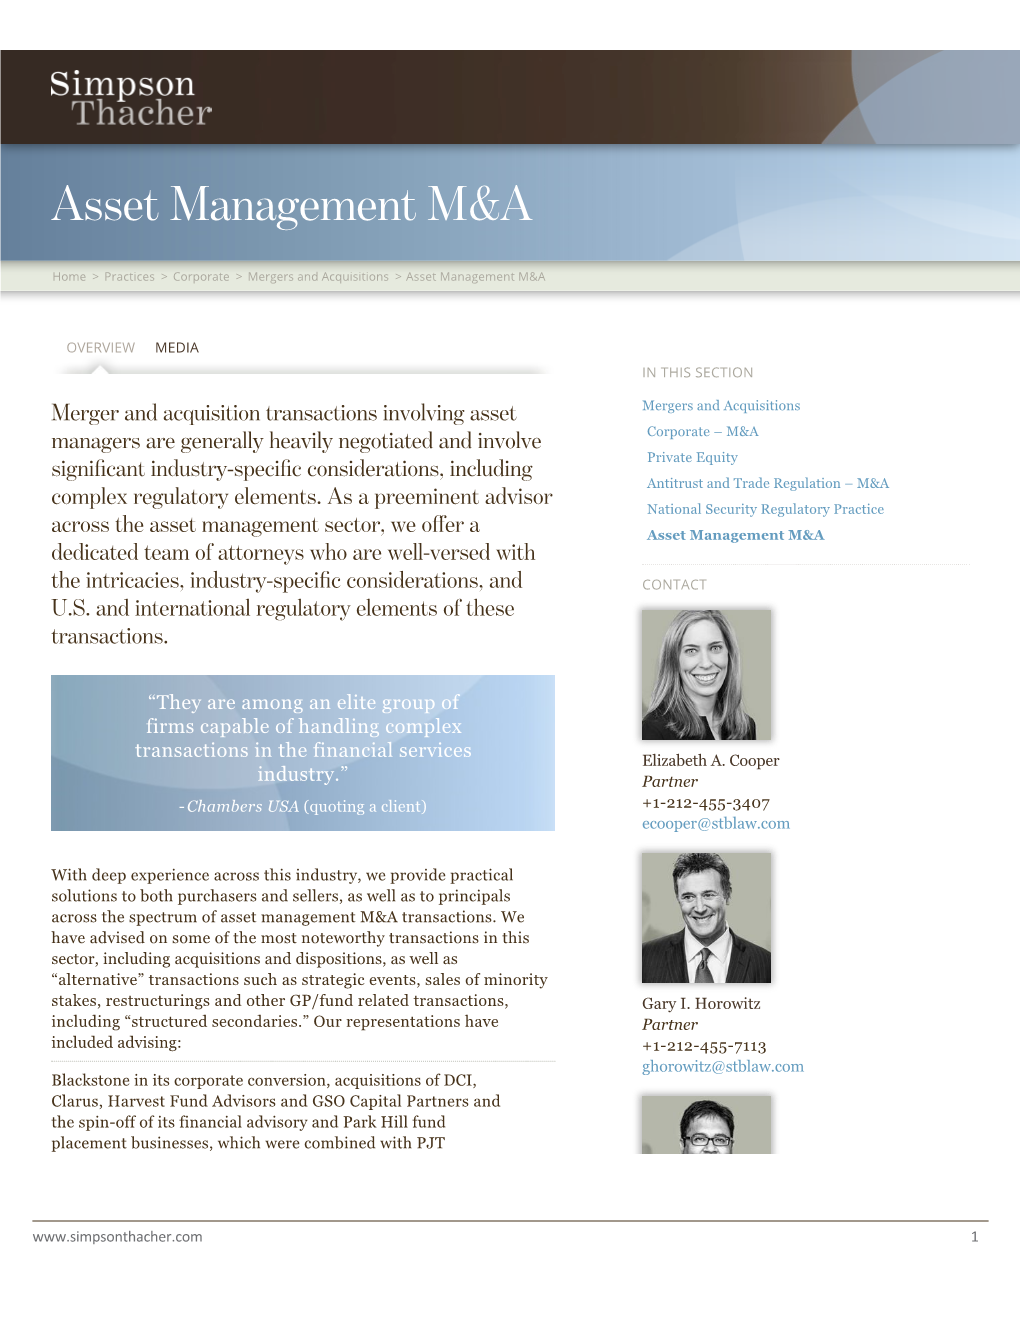 Asset Management M&A | Simpson Thacher & Bartlett